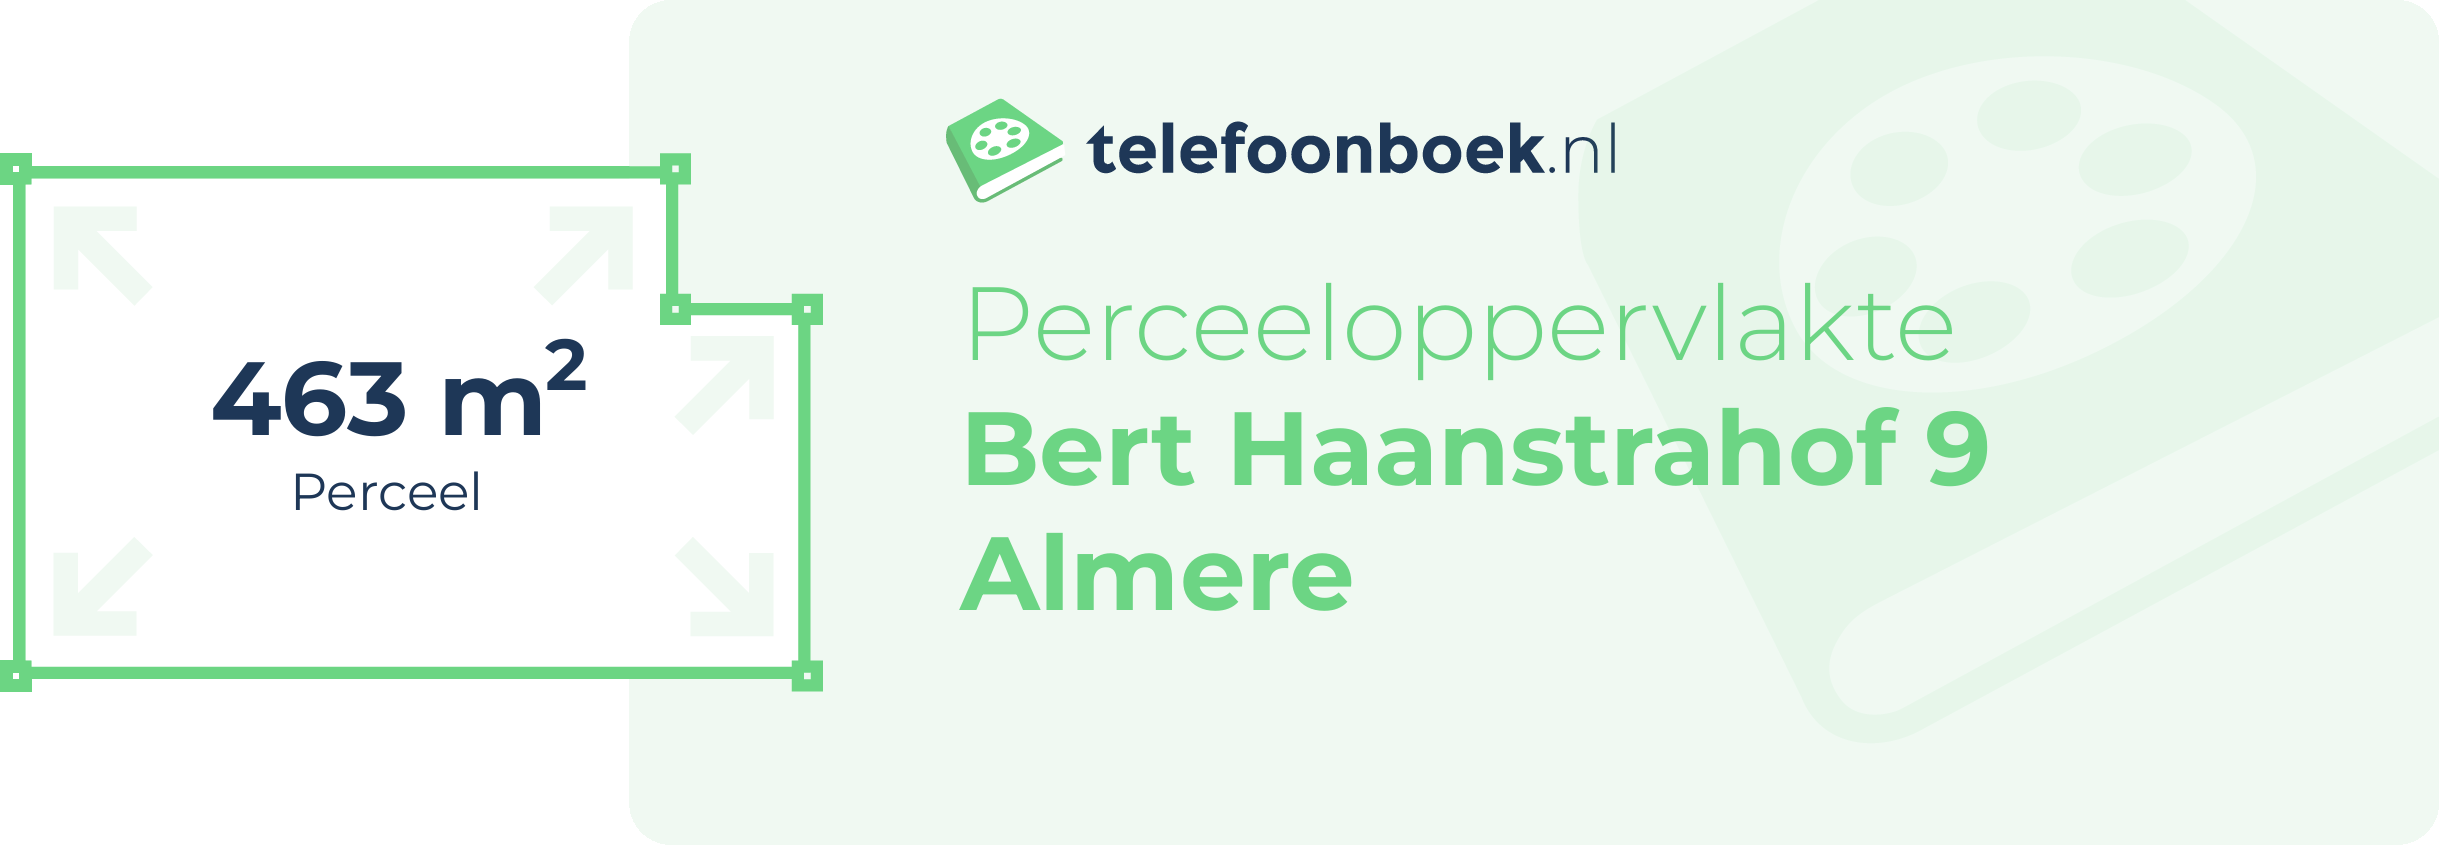 Perceeloppervlakte Bert Haanstrahof 9 Almere